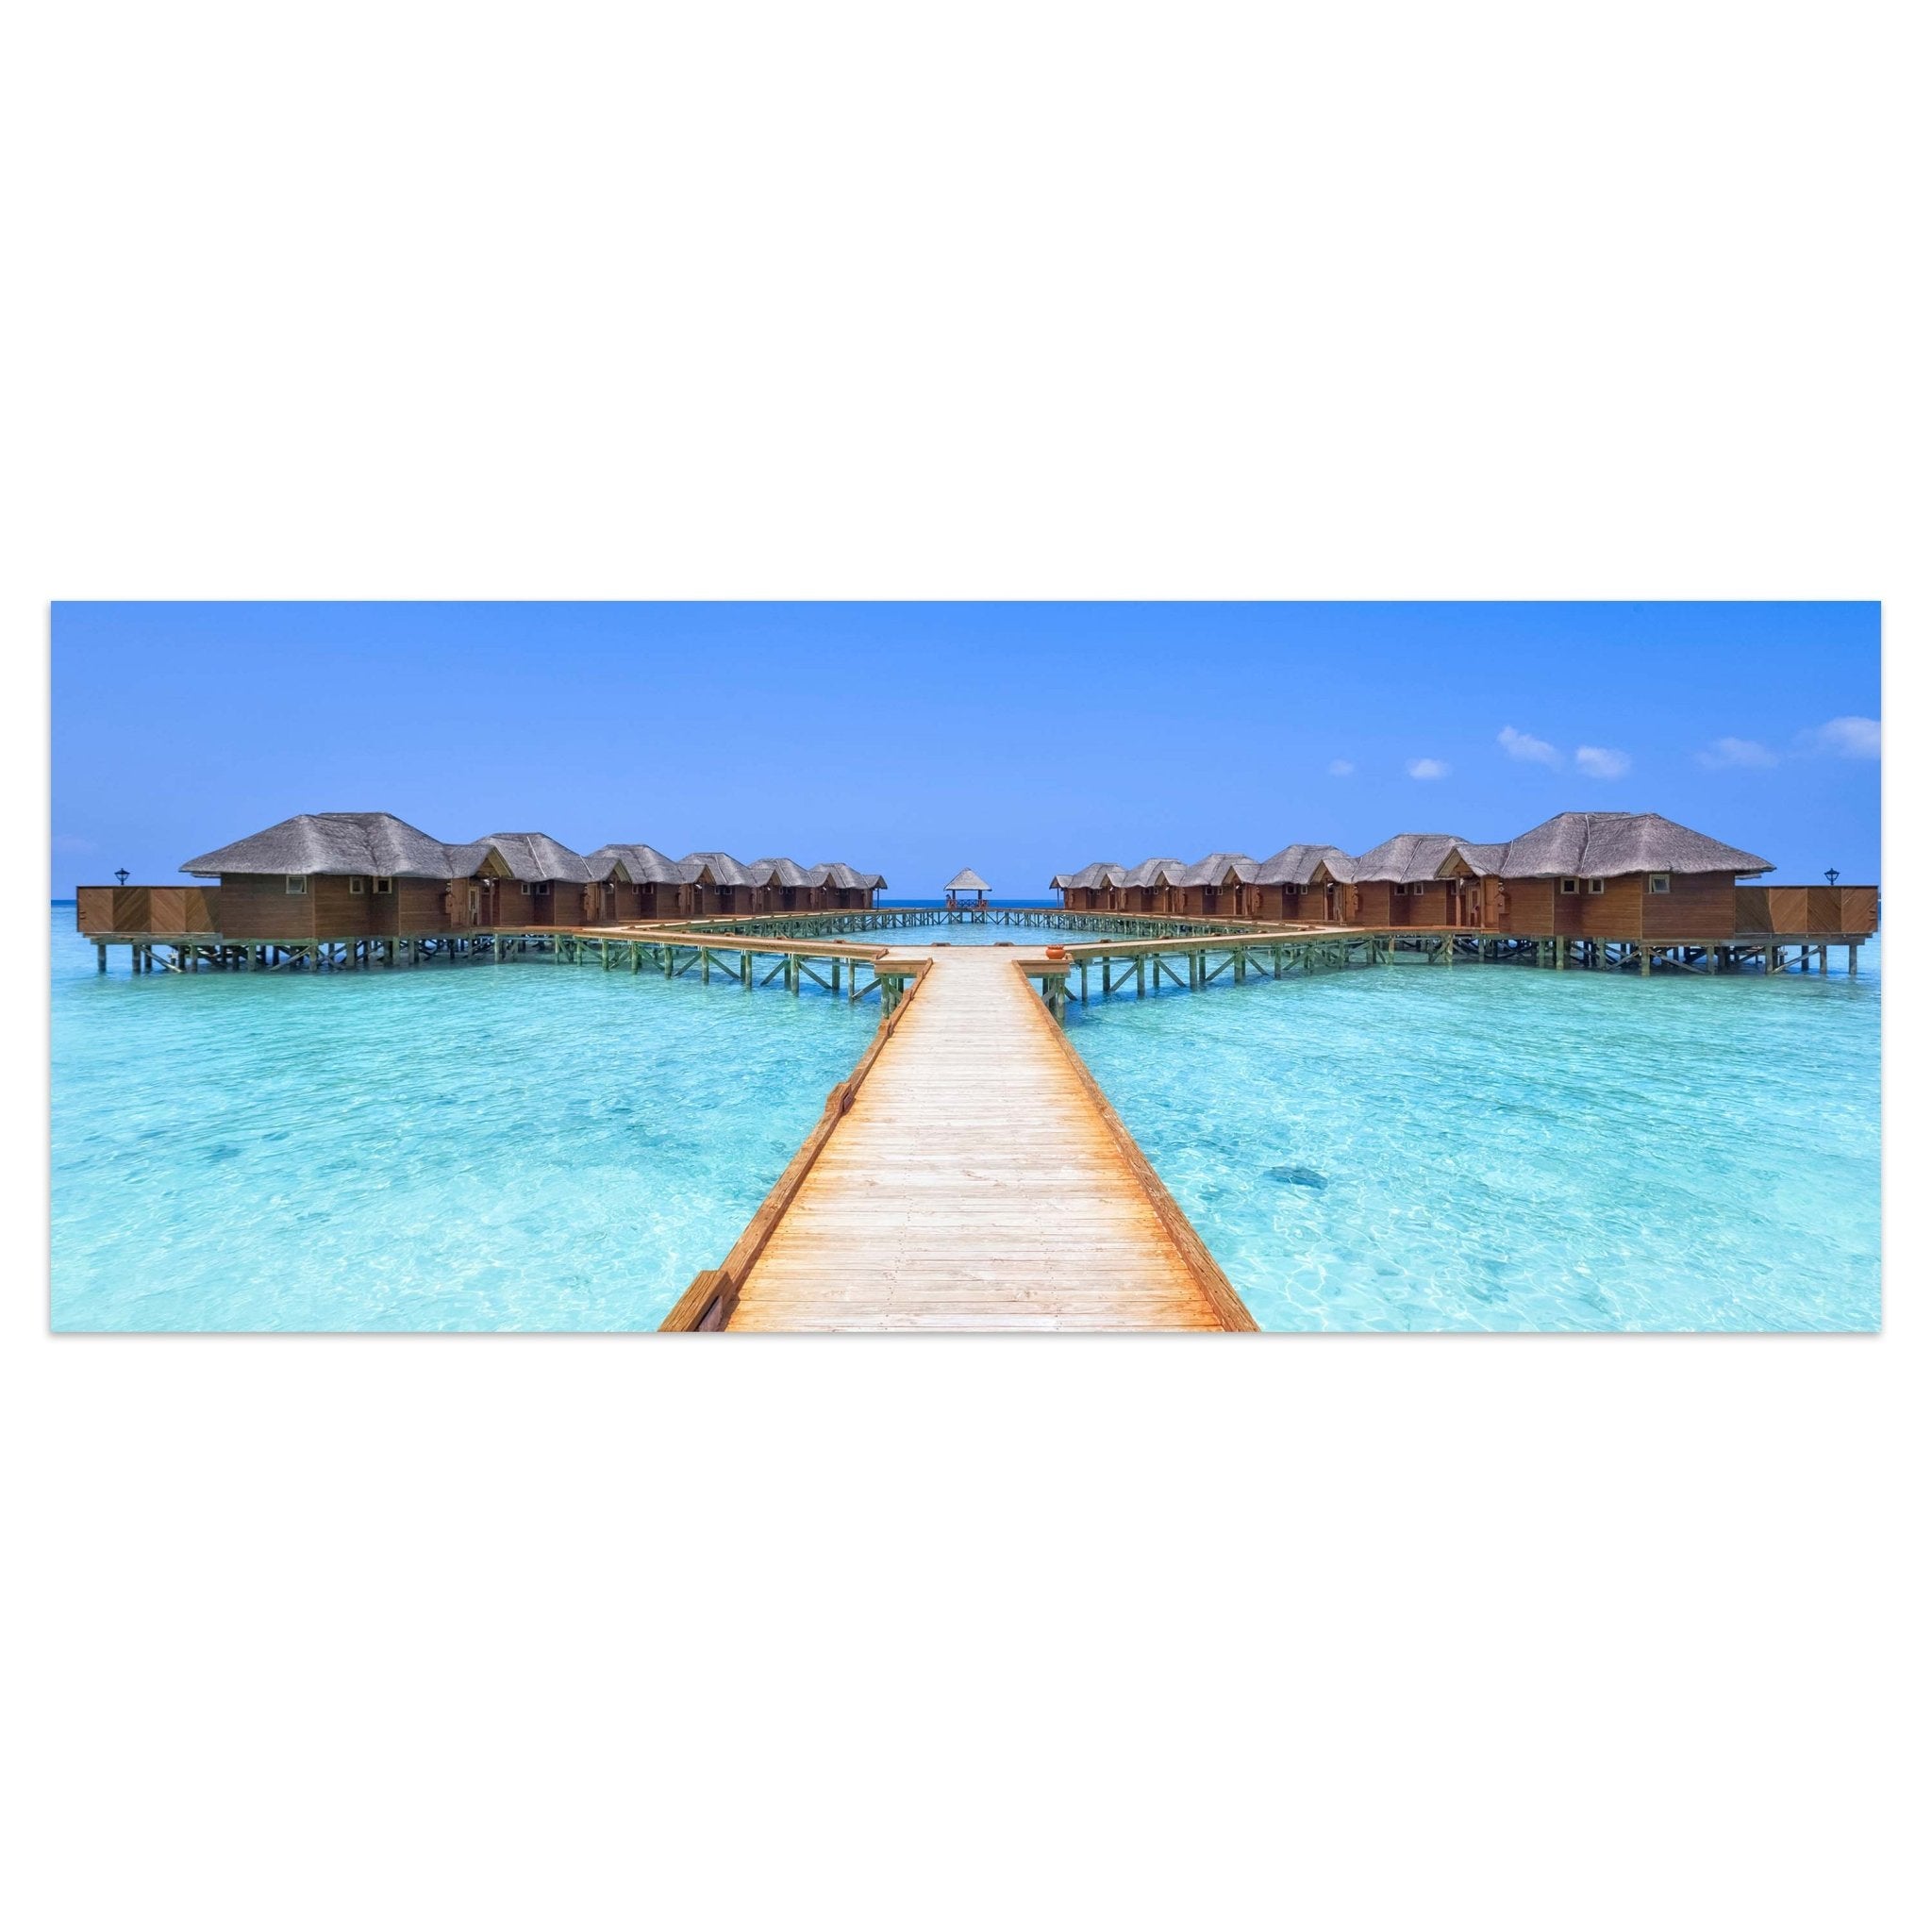 Leinwandbild Malediven Ferienhäuser M0362 kaufen - Bild 1